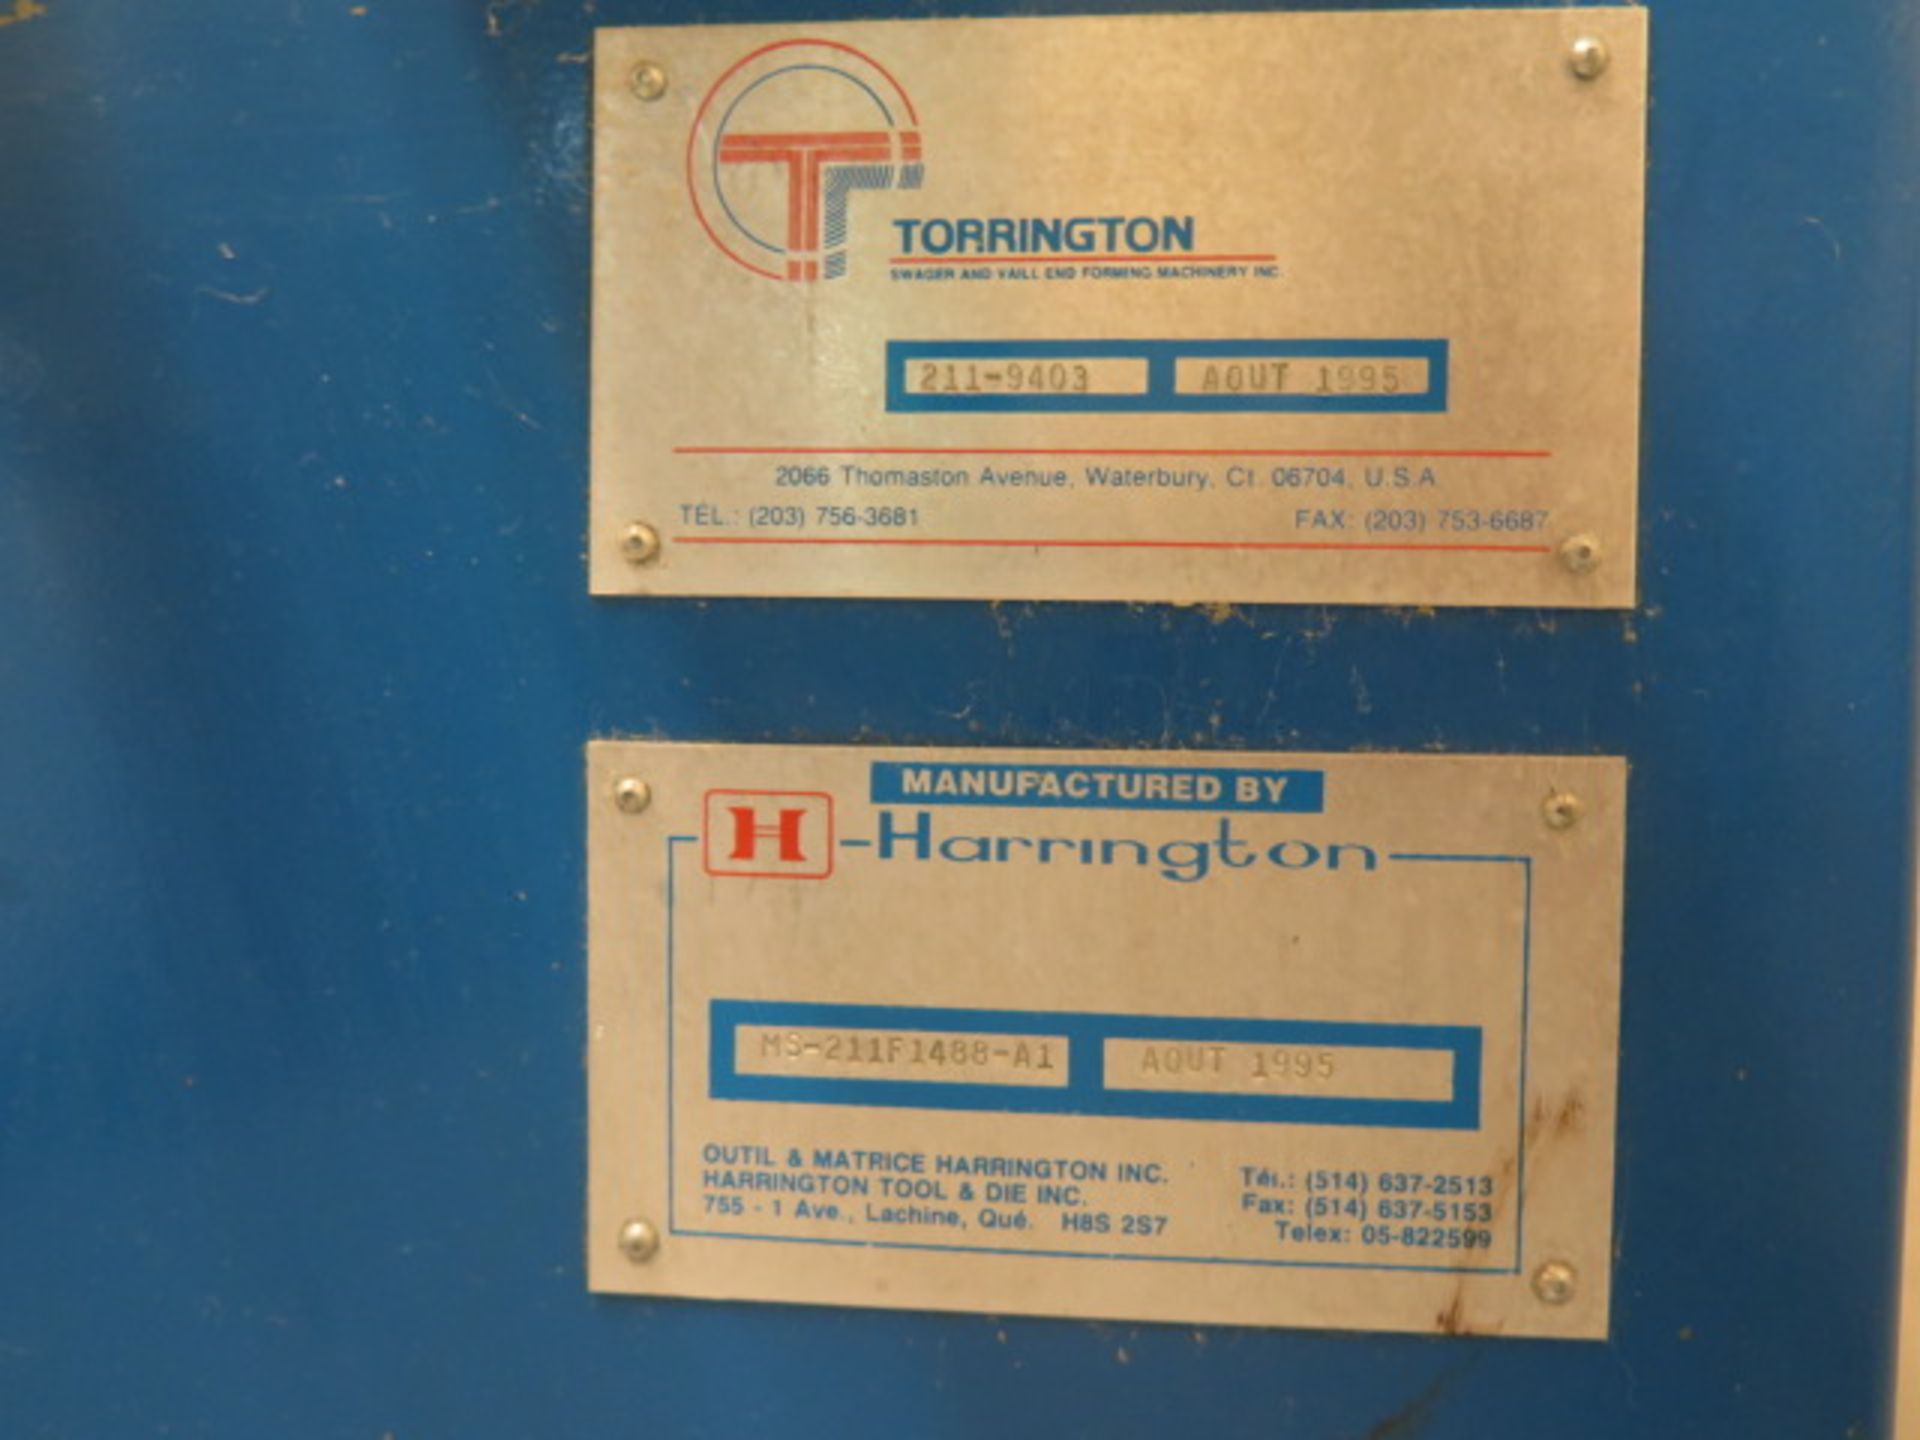 1995 Torrington / Harrington mdl. 211 2-Die Swaging Machine s/n 211-9403 - Image 7 of 7